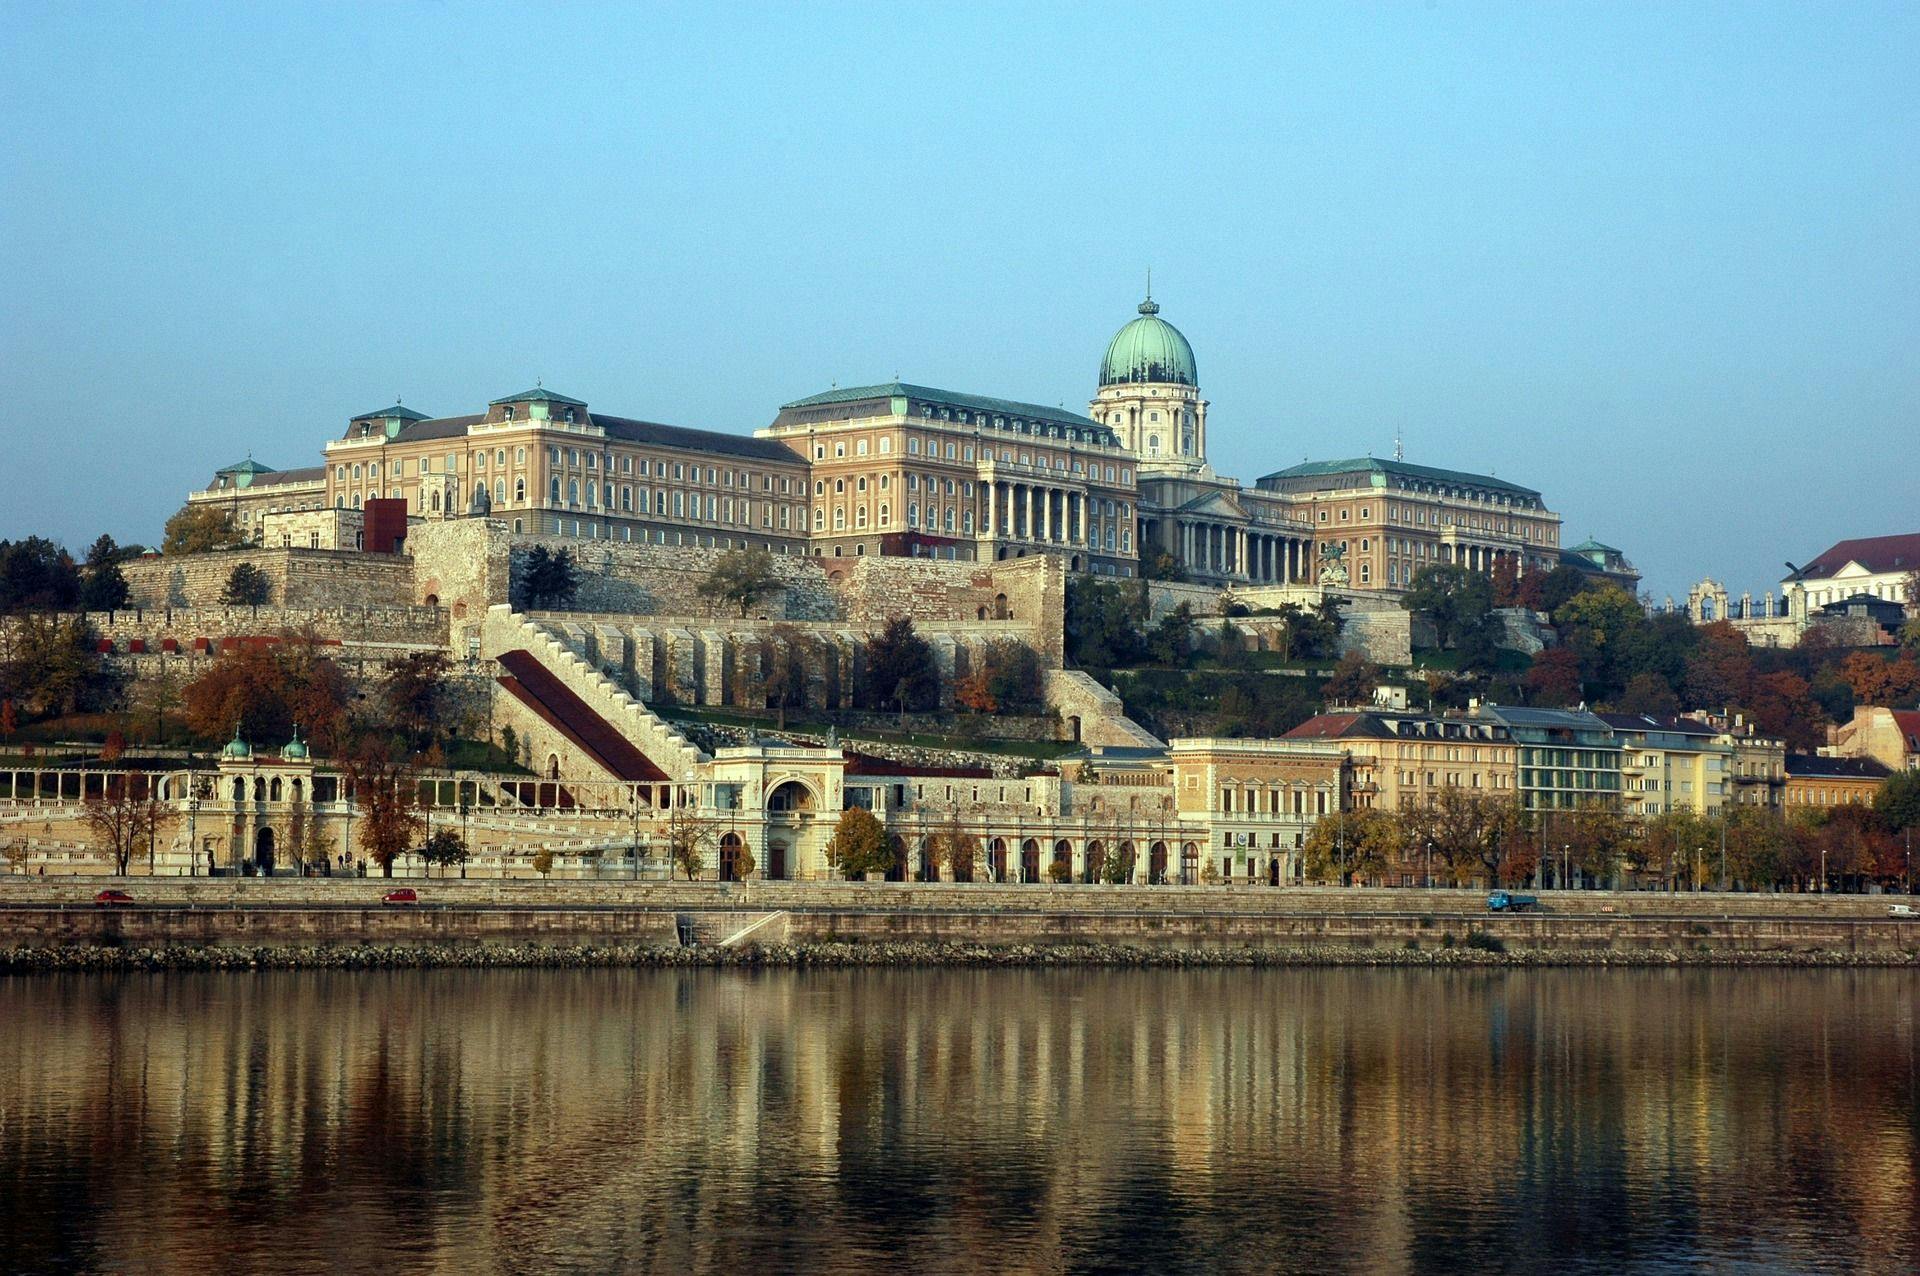 3-stündige Führung durch den Burgpalast Budapest mit Historiker